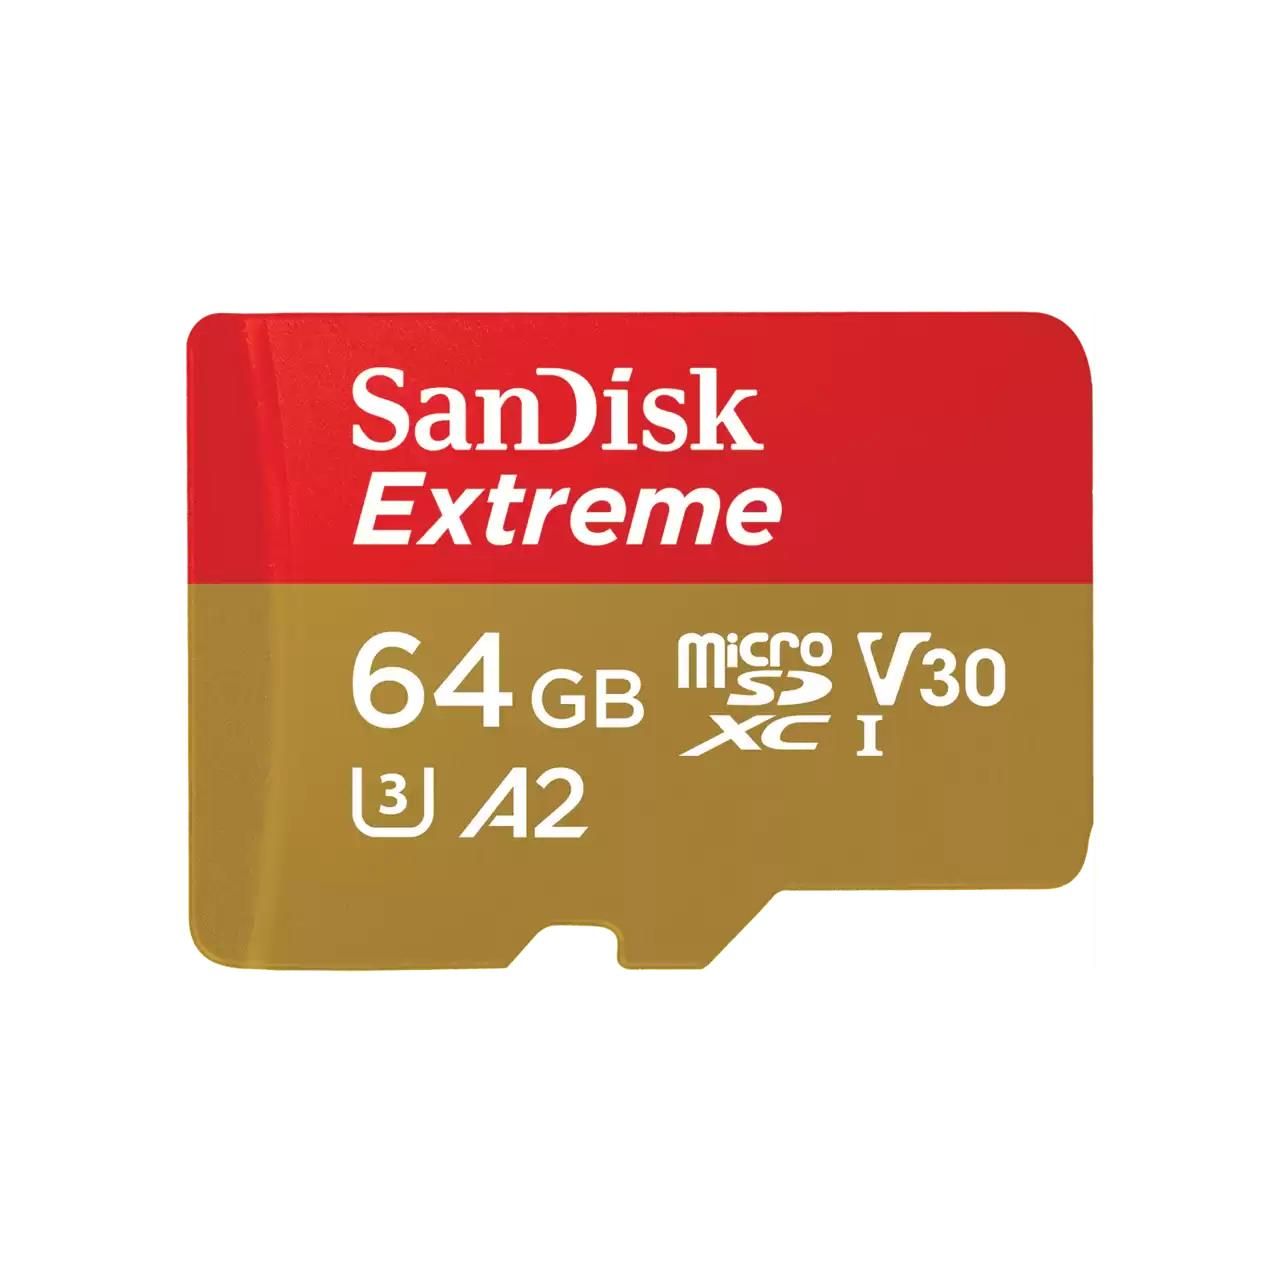 SanDisk Extreme 64Gb MicroSDXC